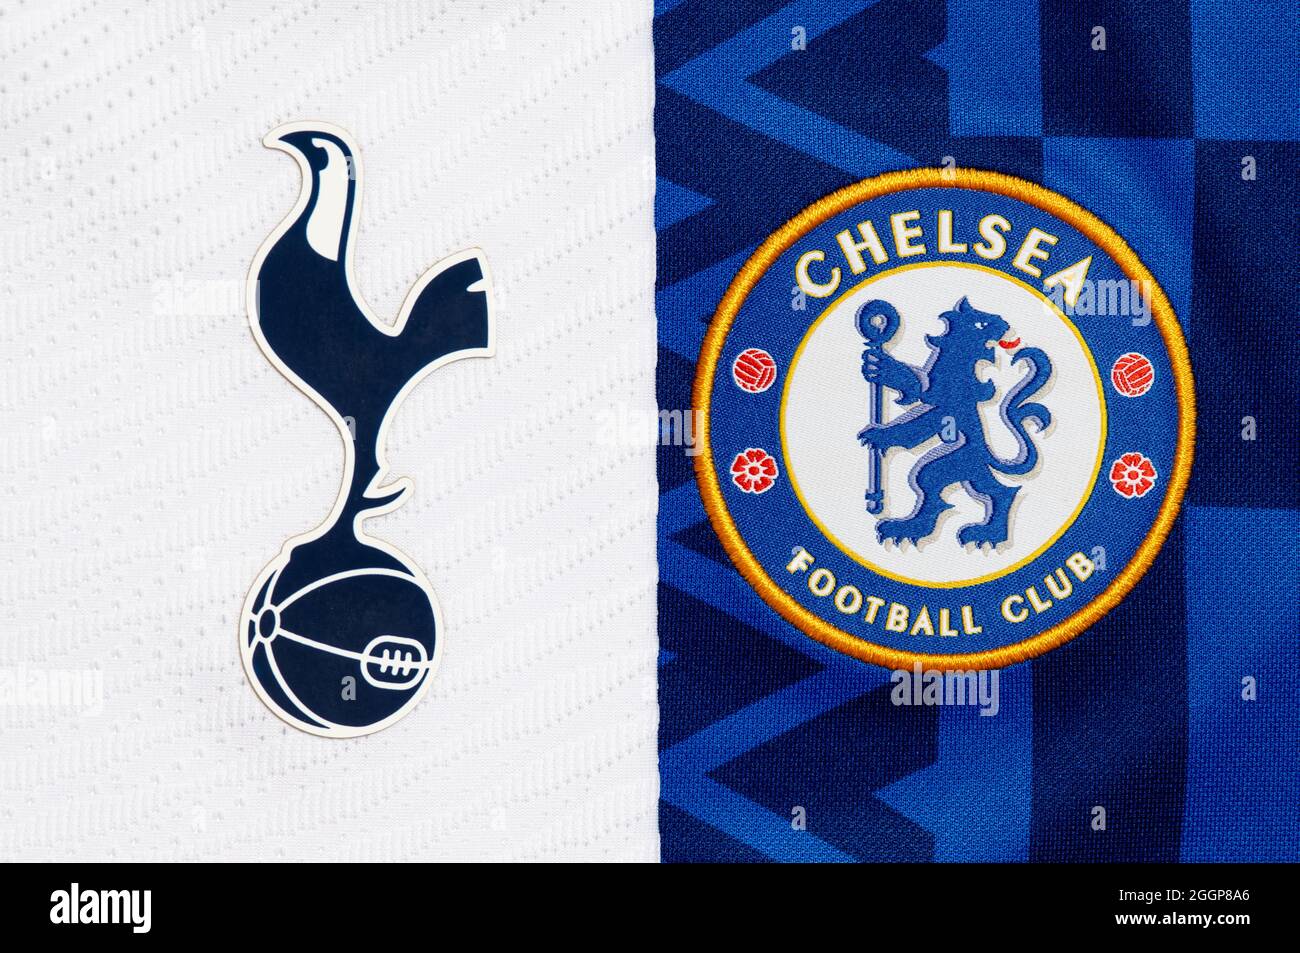 Close up of Tottenham Hotspur & Chelsea club crest. Stock Photo